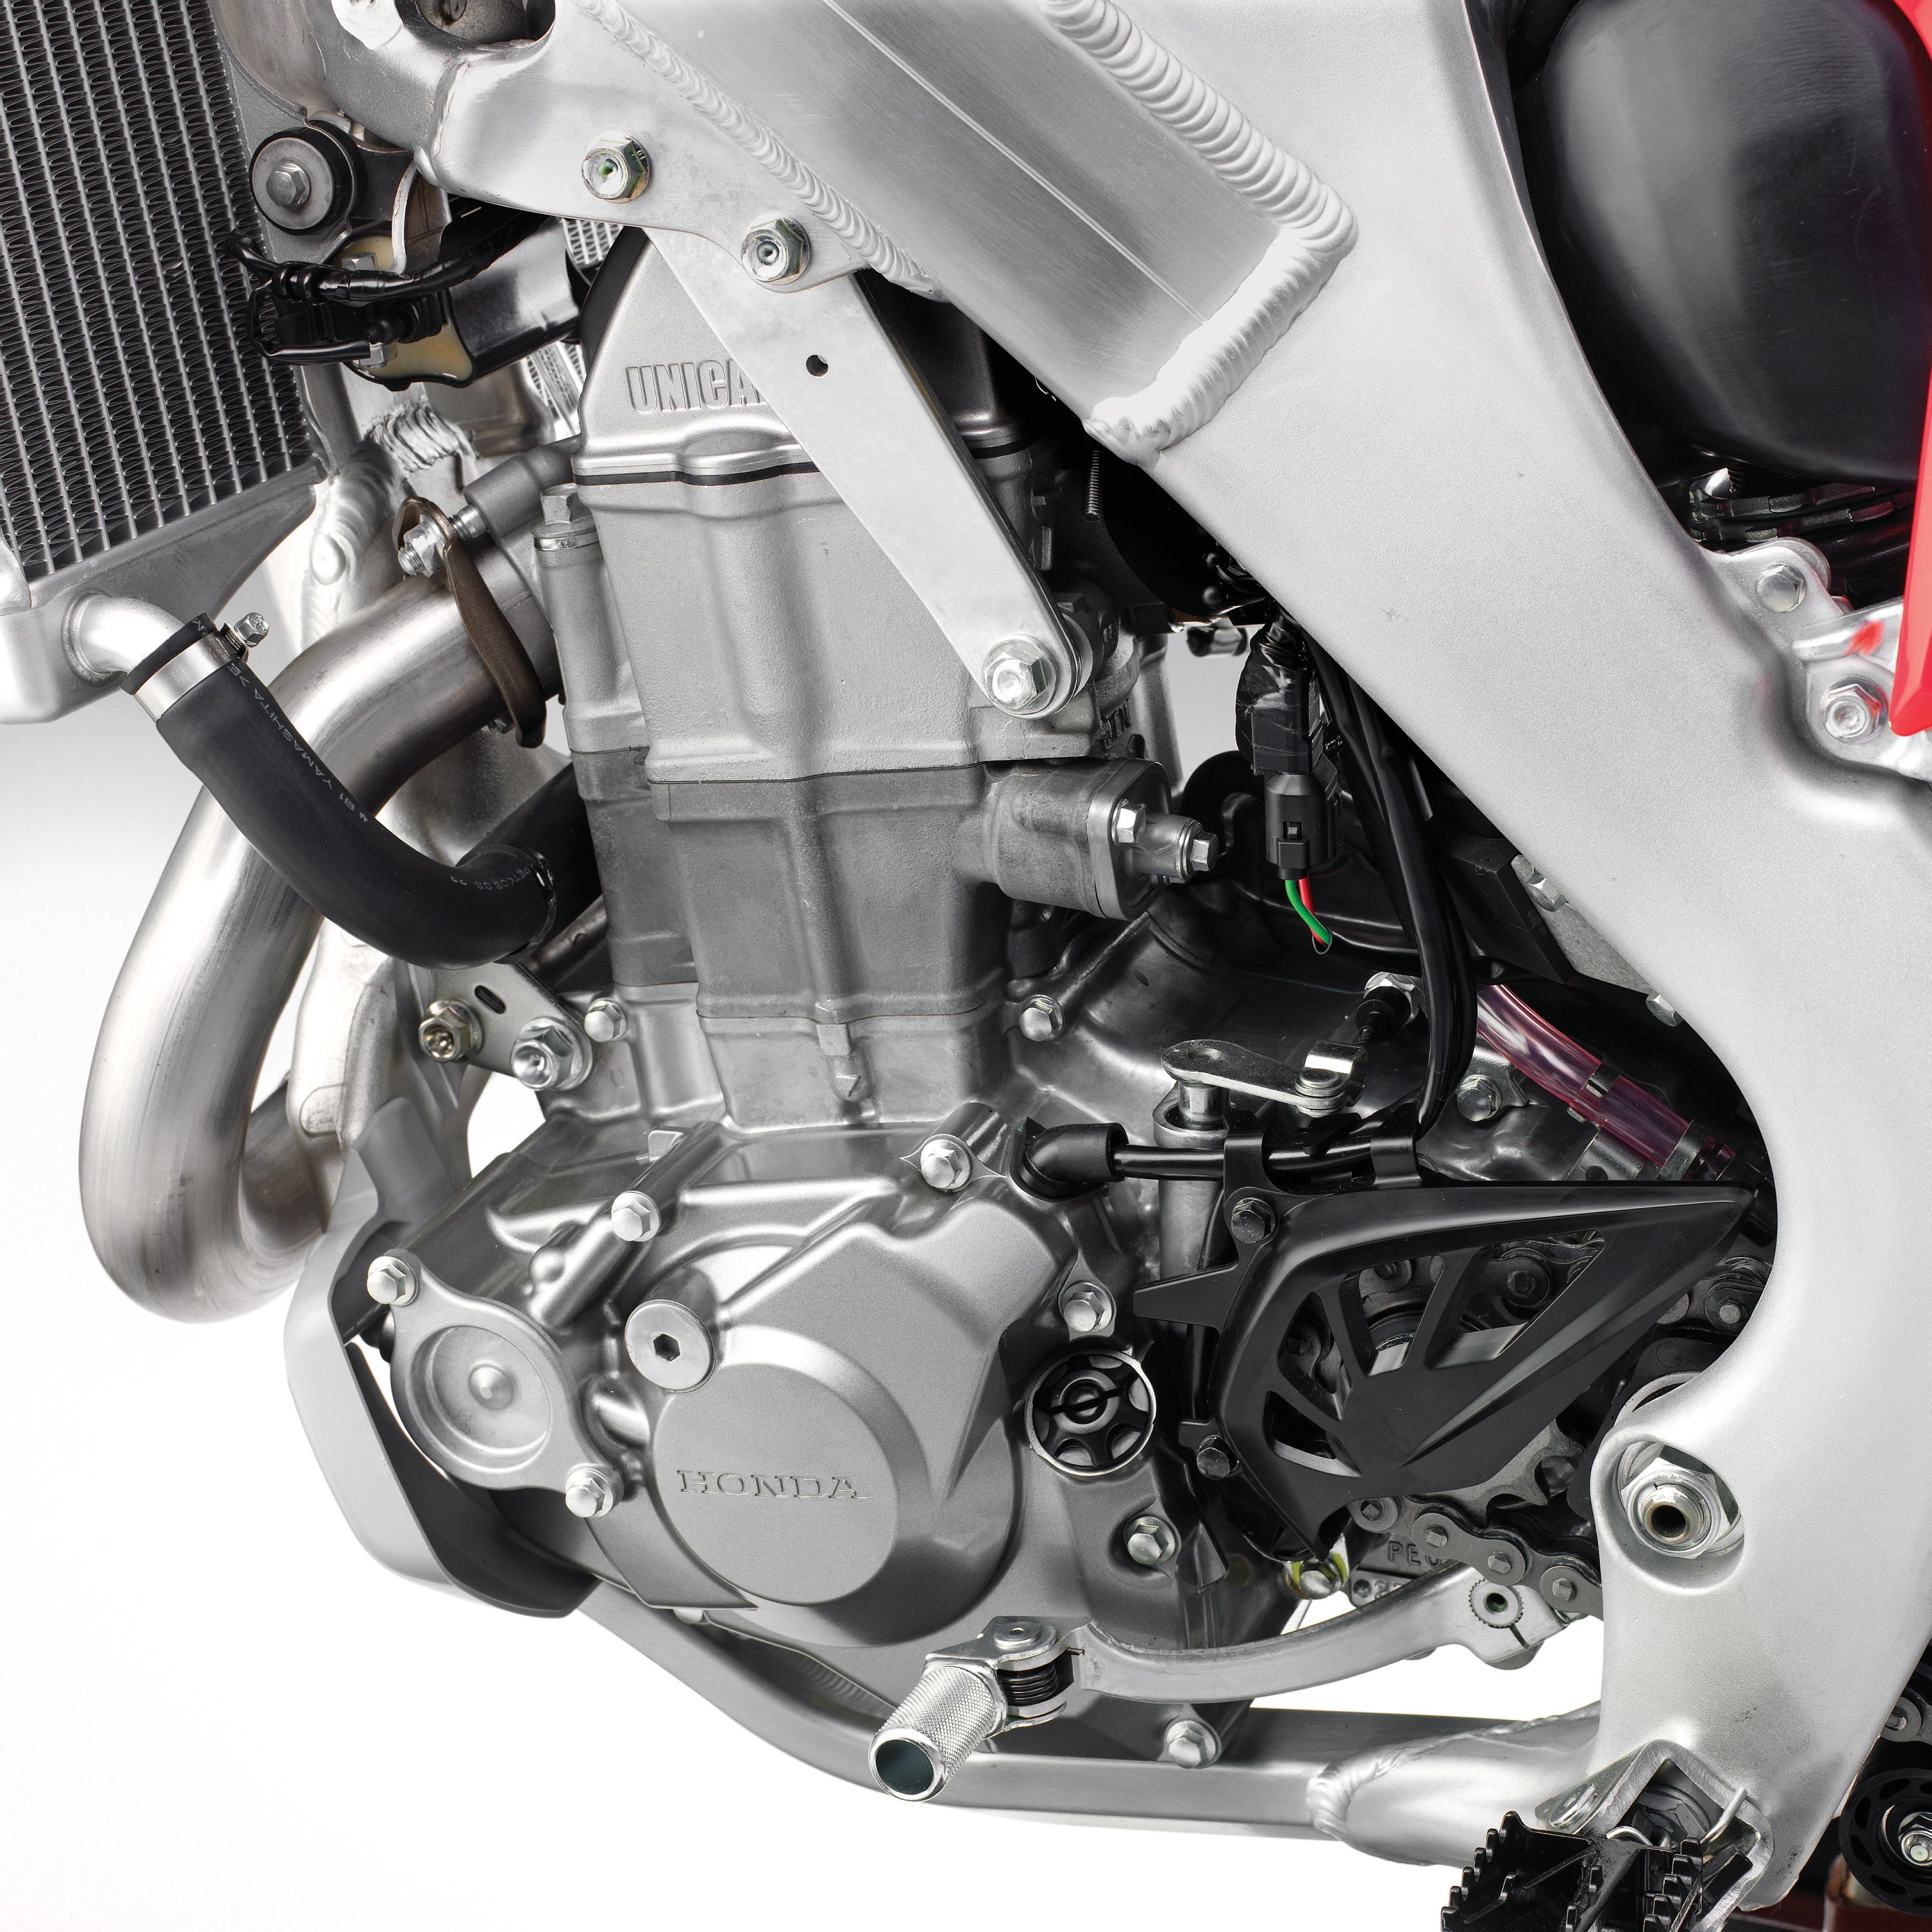  2009 Honda CRF450R Engine